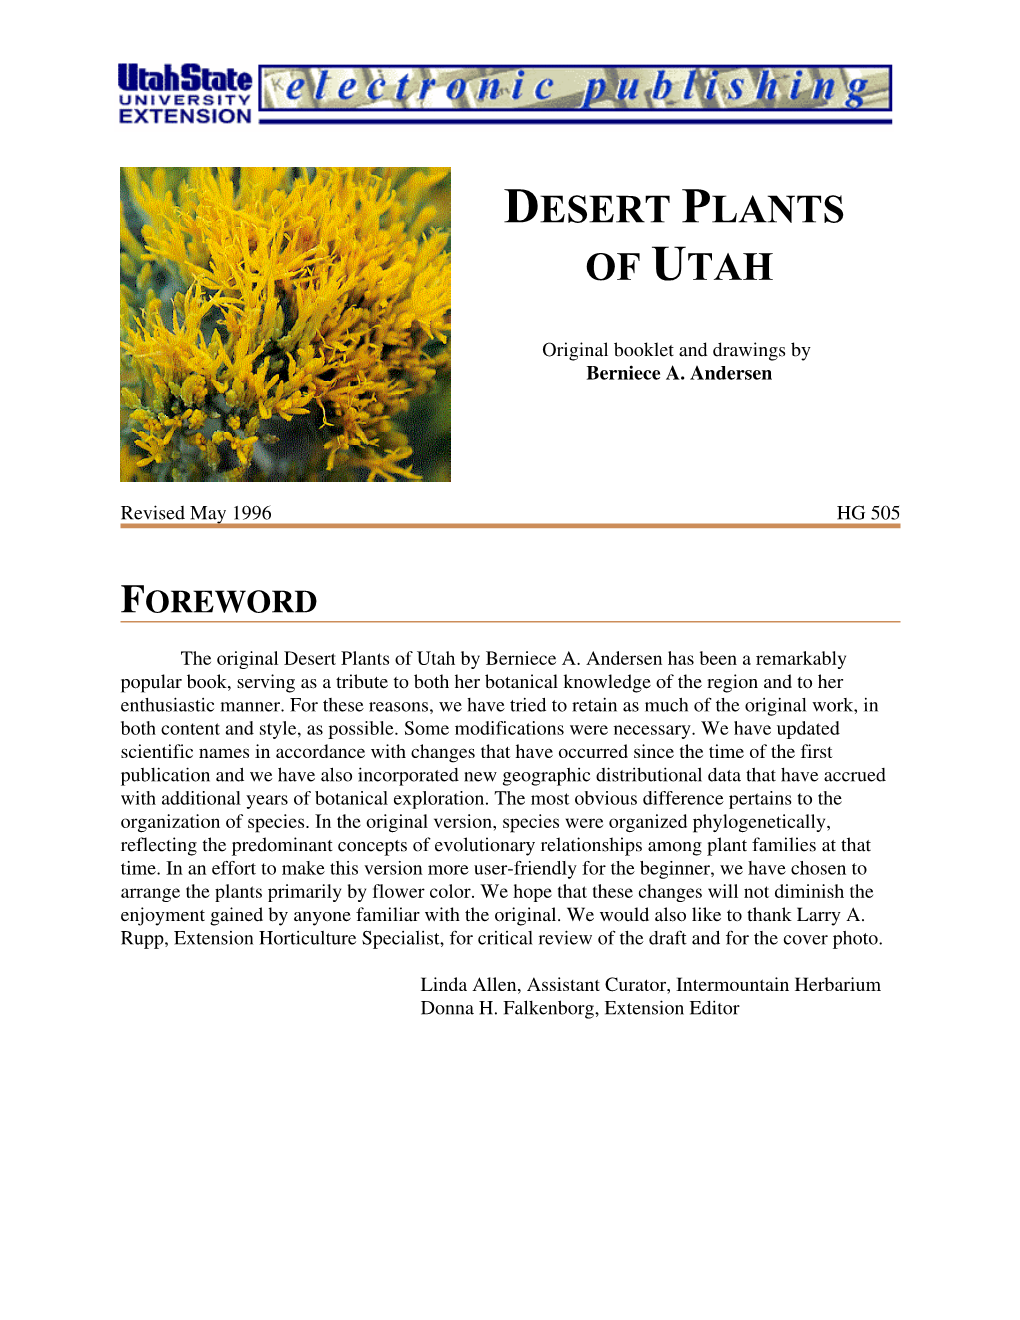 Desert Plants of Utah